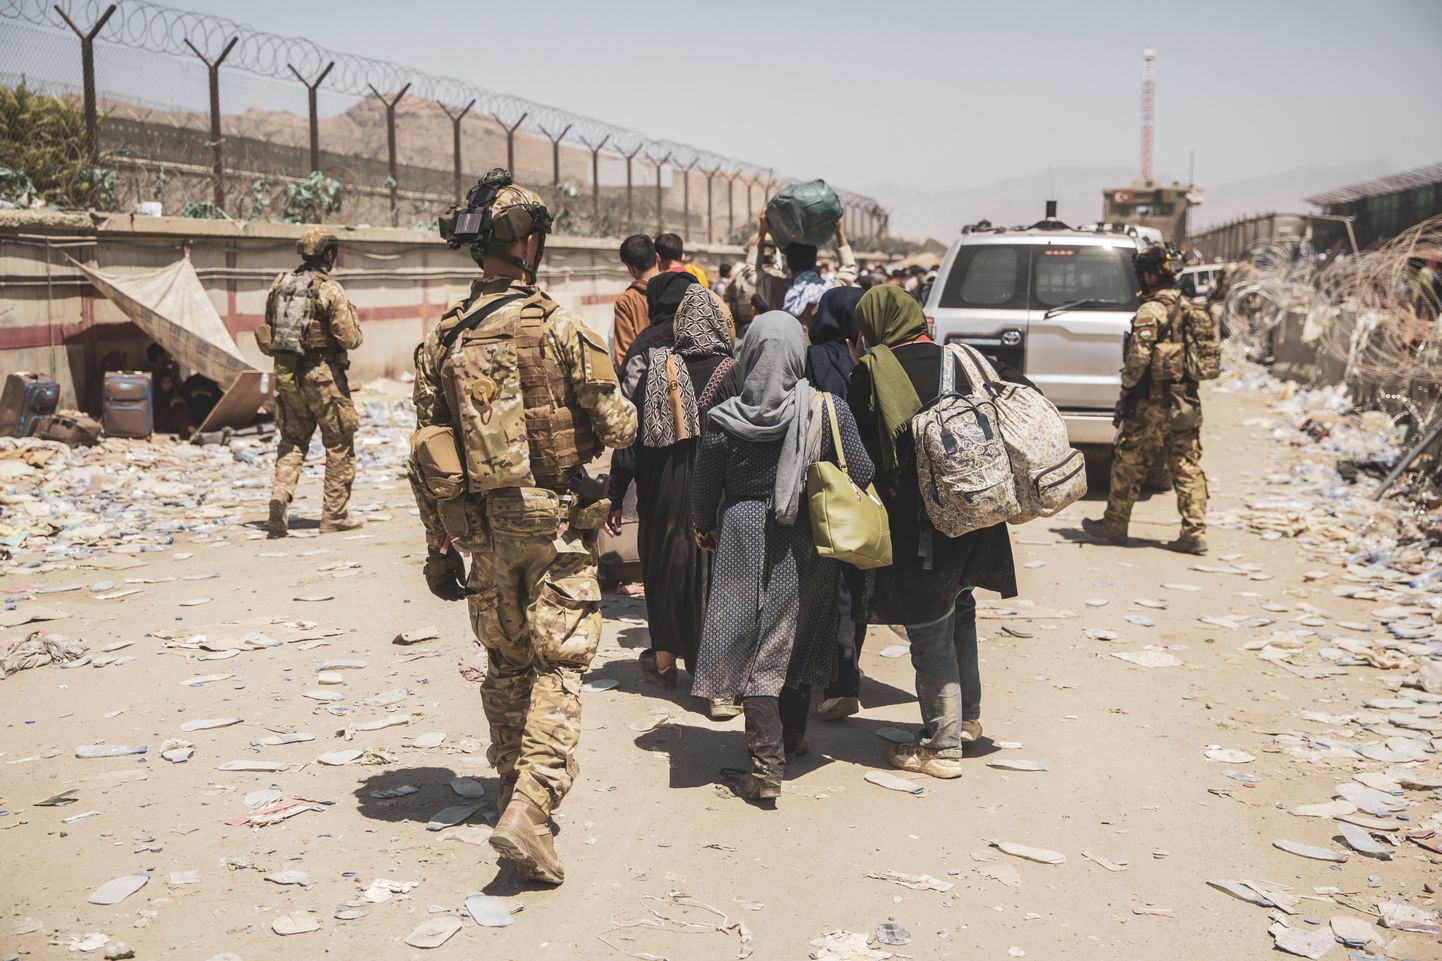 Itaalia sõdurid abistamas evakuaitsioonilennule suunduvaid afgaane. Foto on tehtud Kabuli lennujaama juures 24. augustil